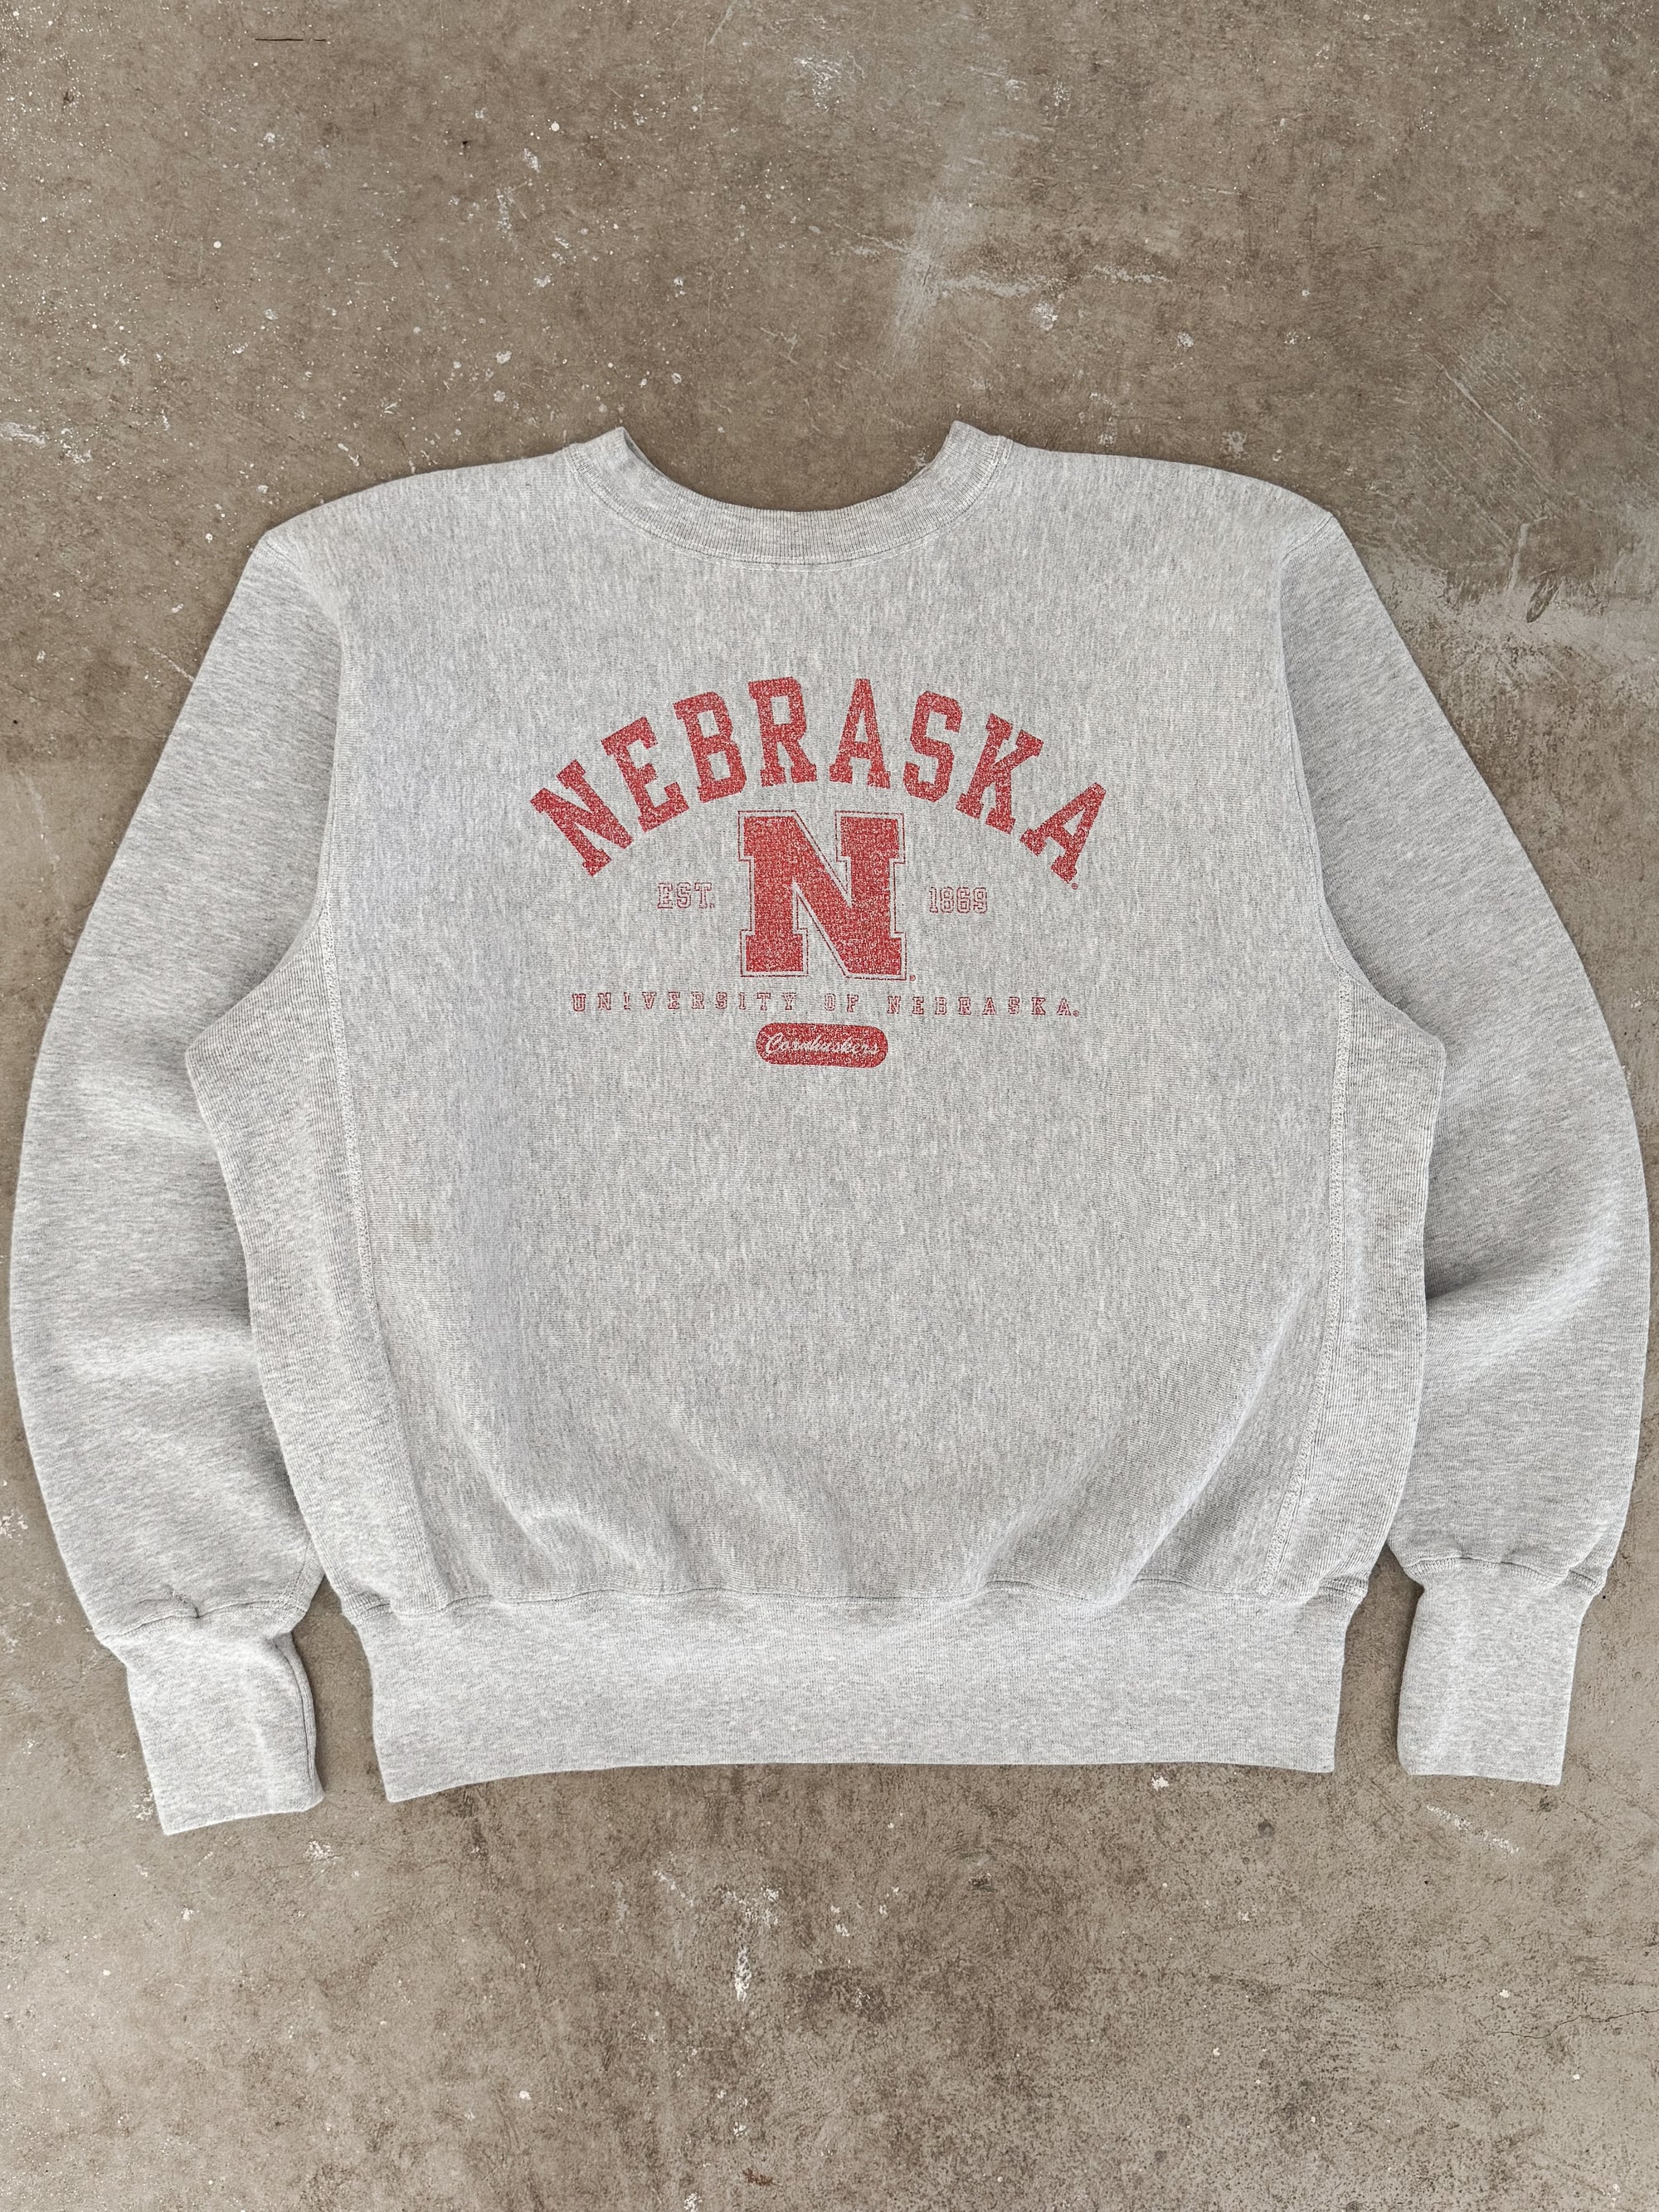 1990s "Nebraska" Sweatshirt (L)